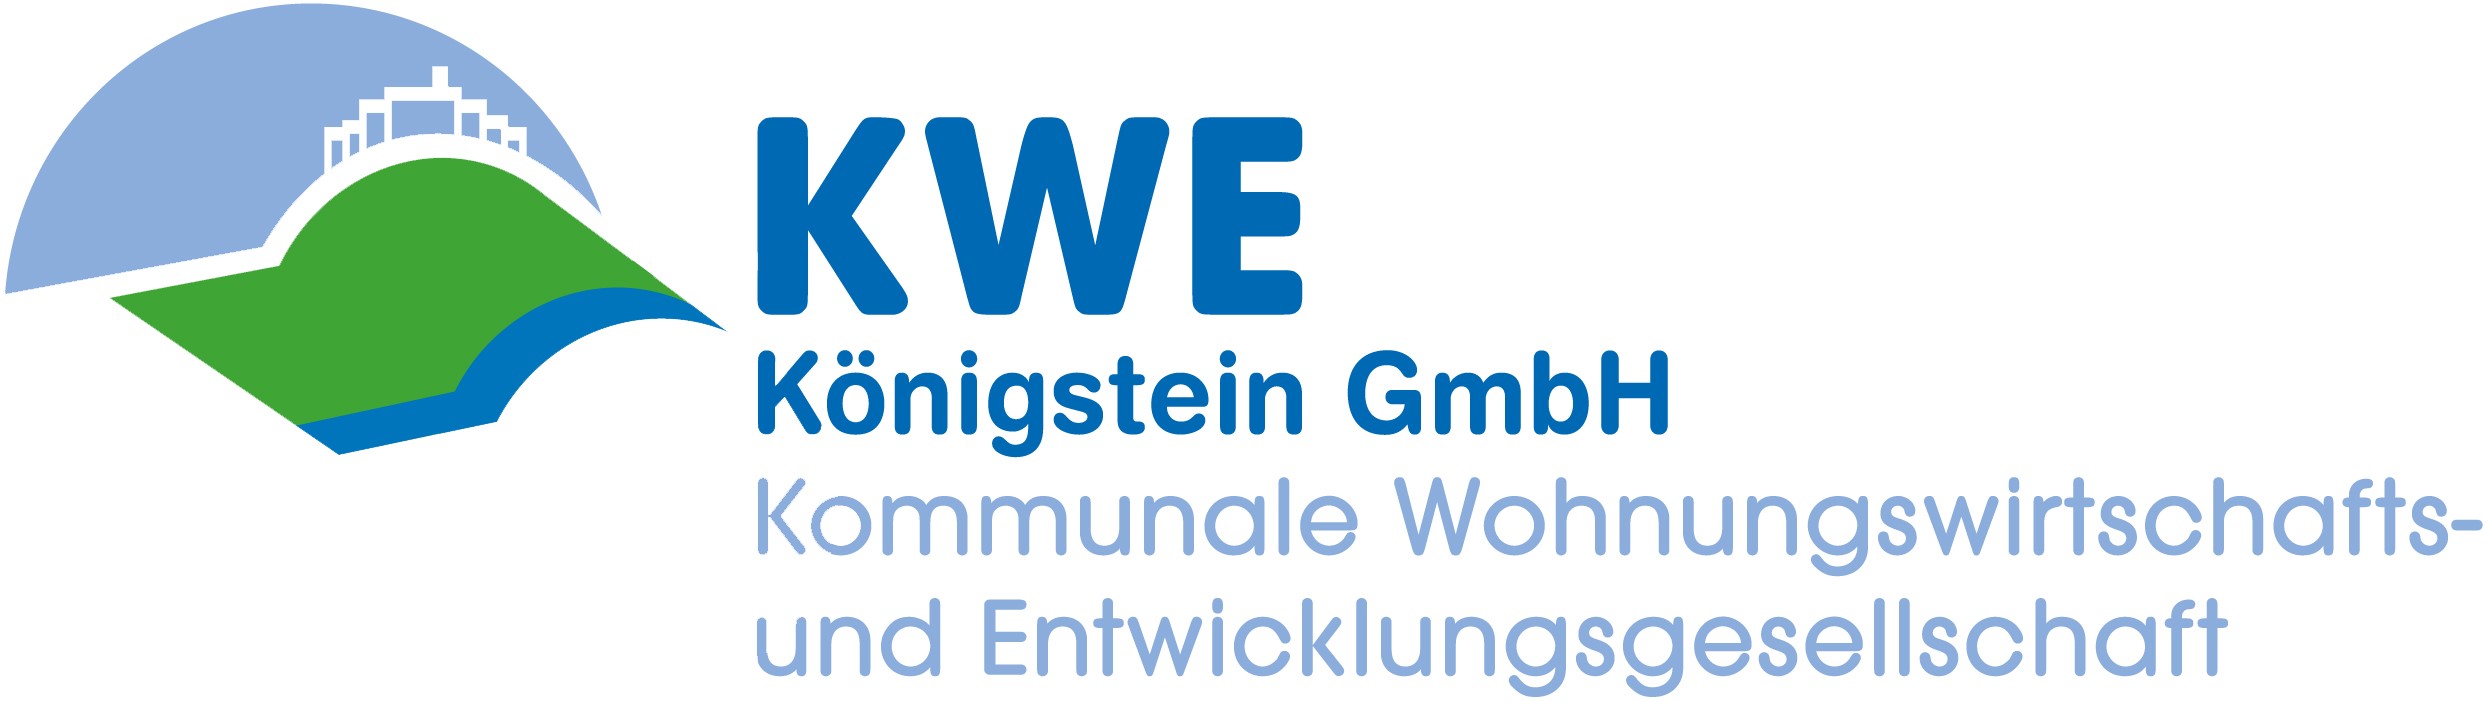 KWE-Königstein GmbH